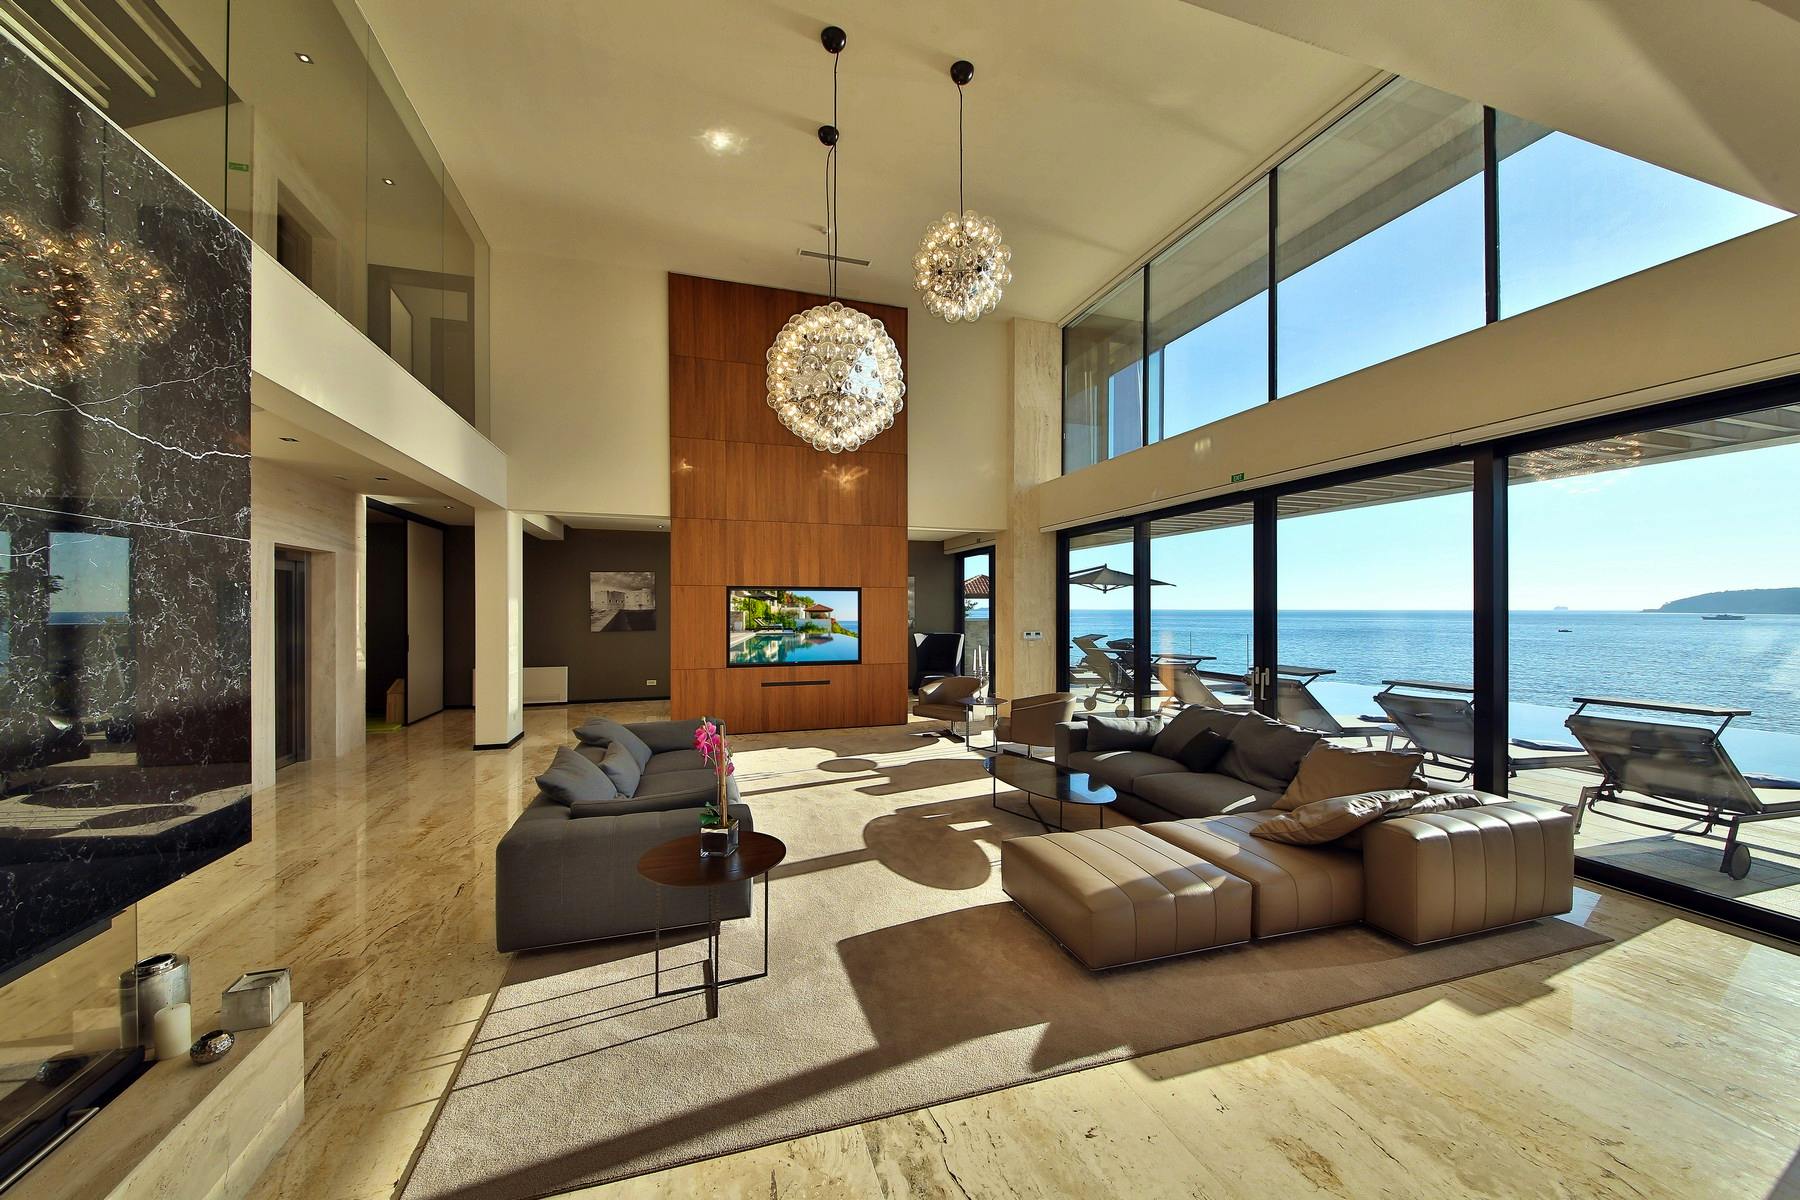 Contemporary living room boasting sea view